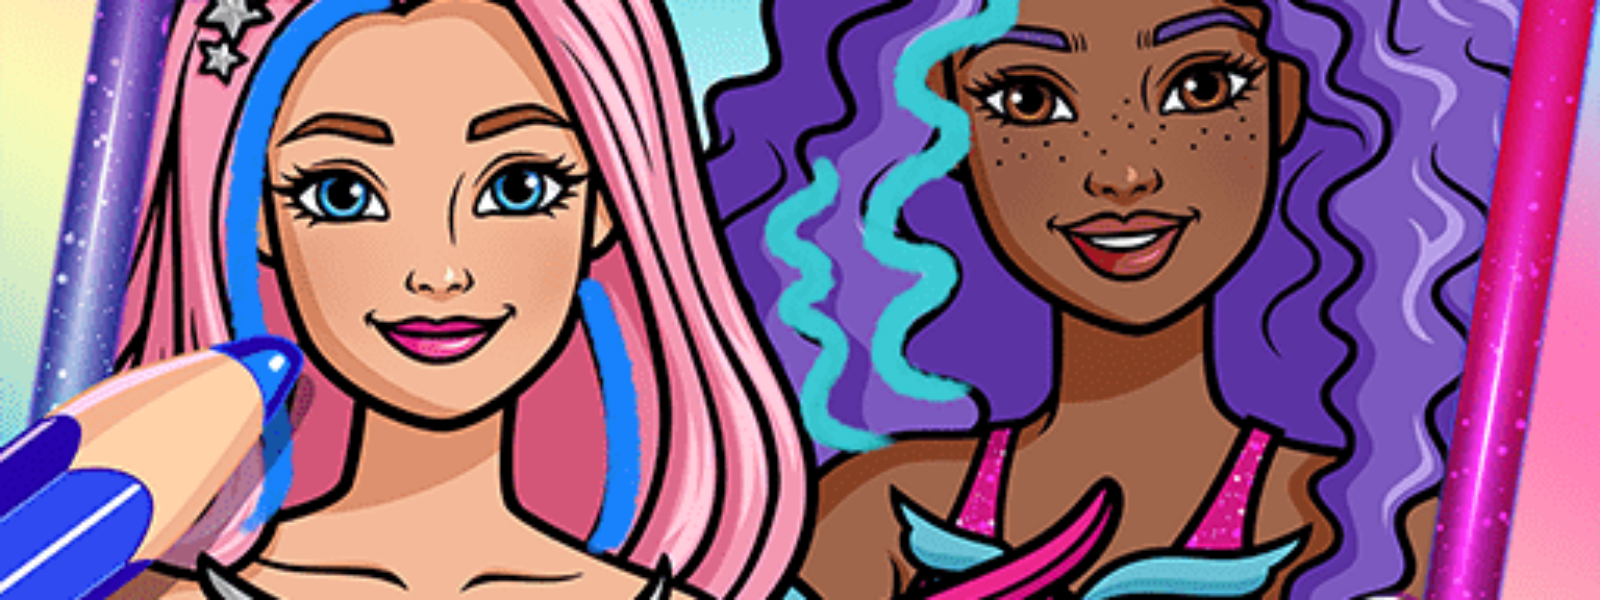 Barbie Color Creations pentru Android | iOS